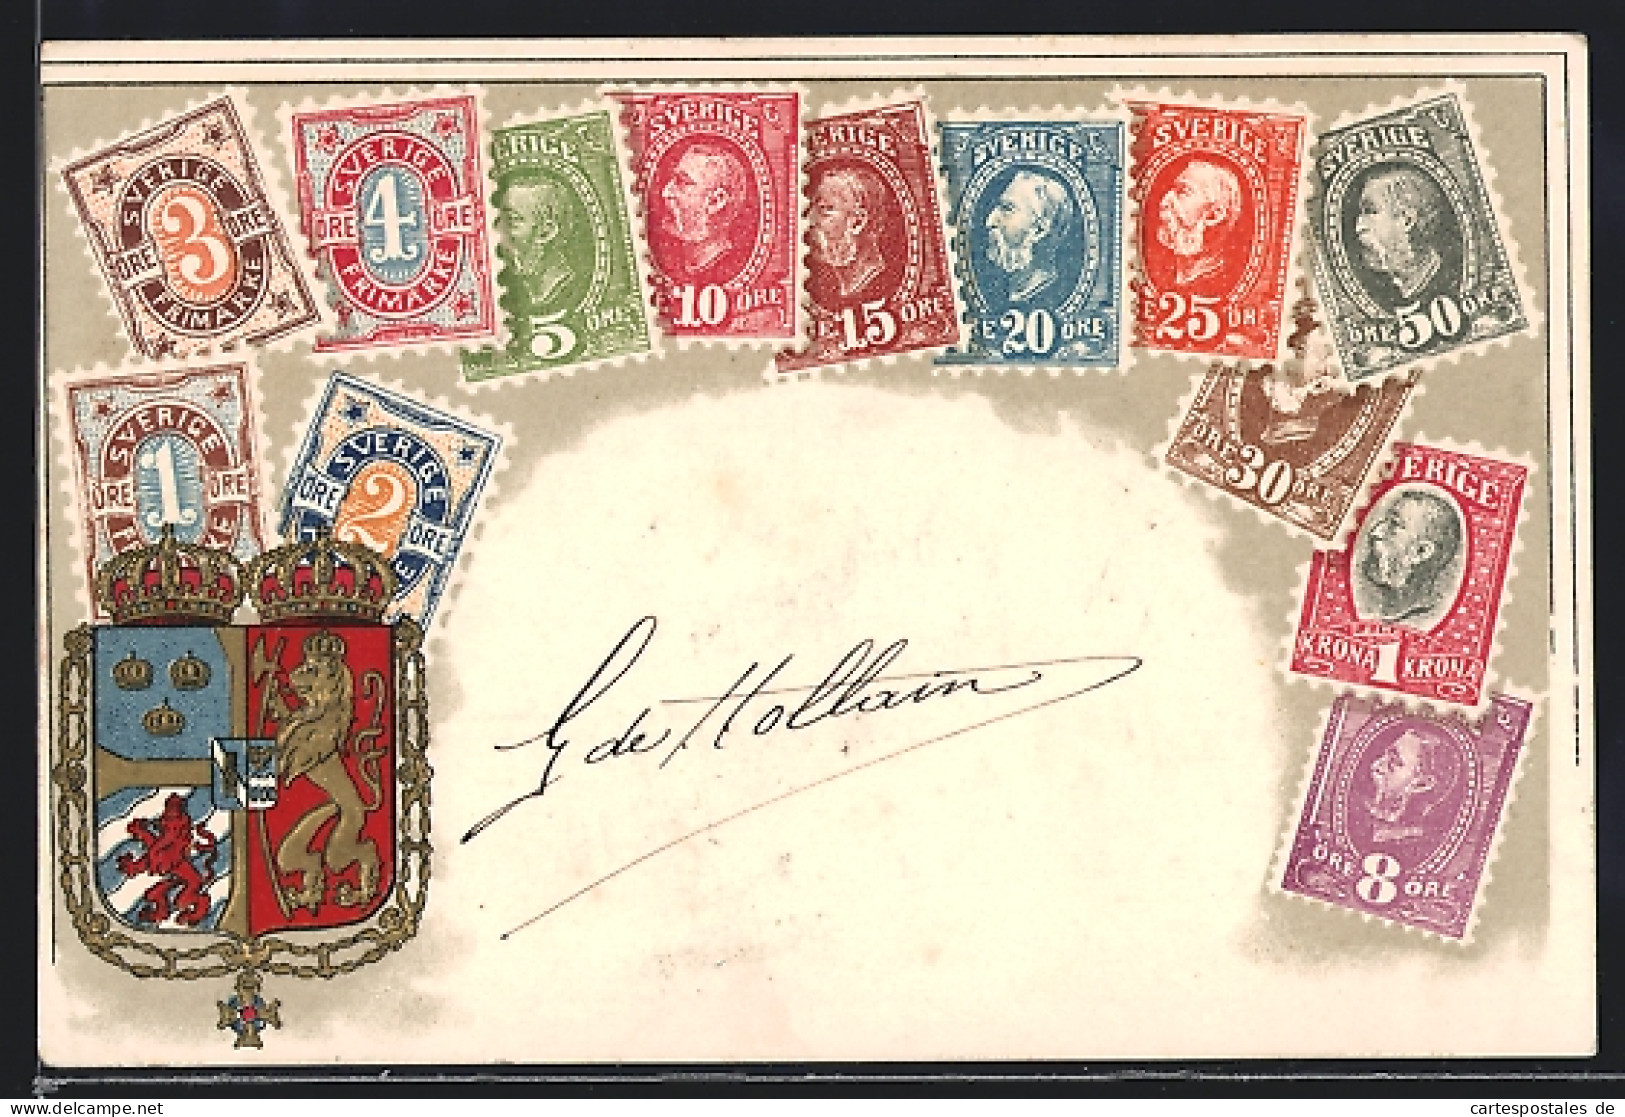 Präge-Lithographie Sverige, Wappen Und Briefmarken  - Briefmarken (Abbildungen)